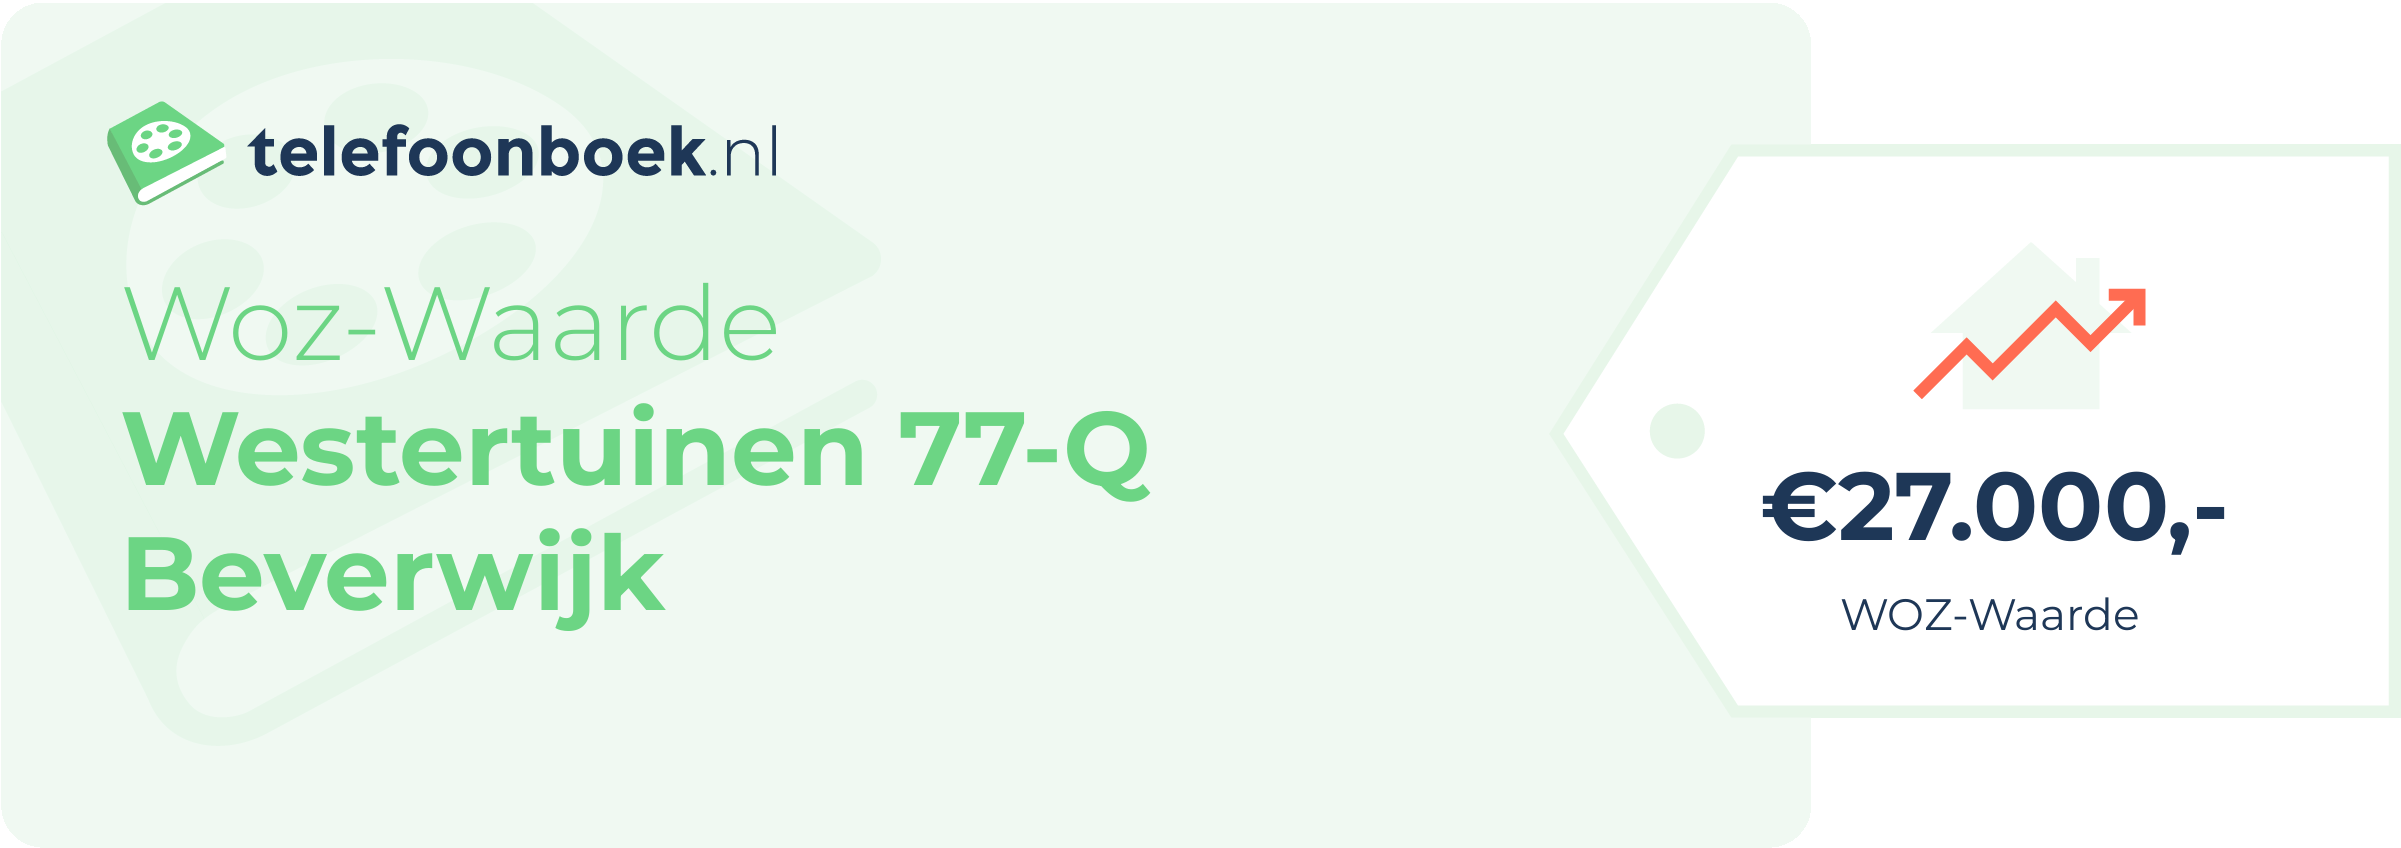 WOZ-waarde Westertuinen 77-Q Beverwijk